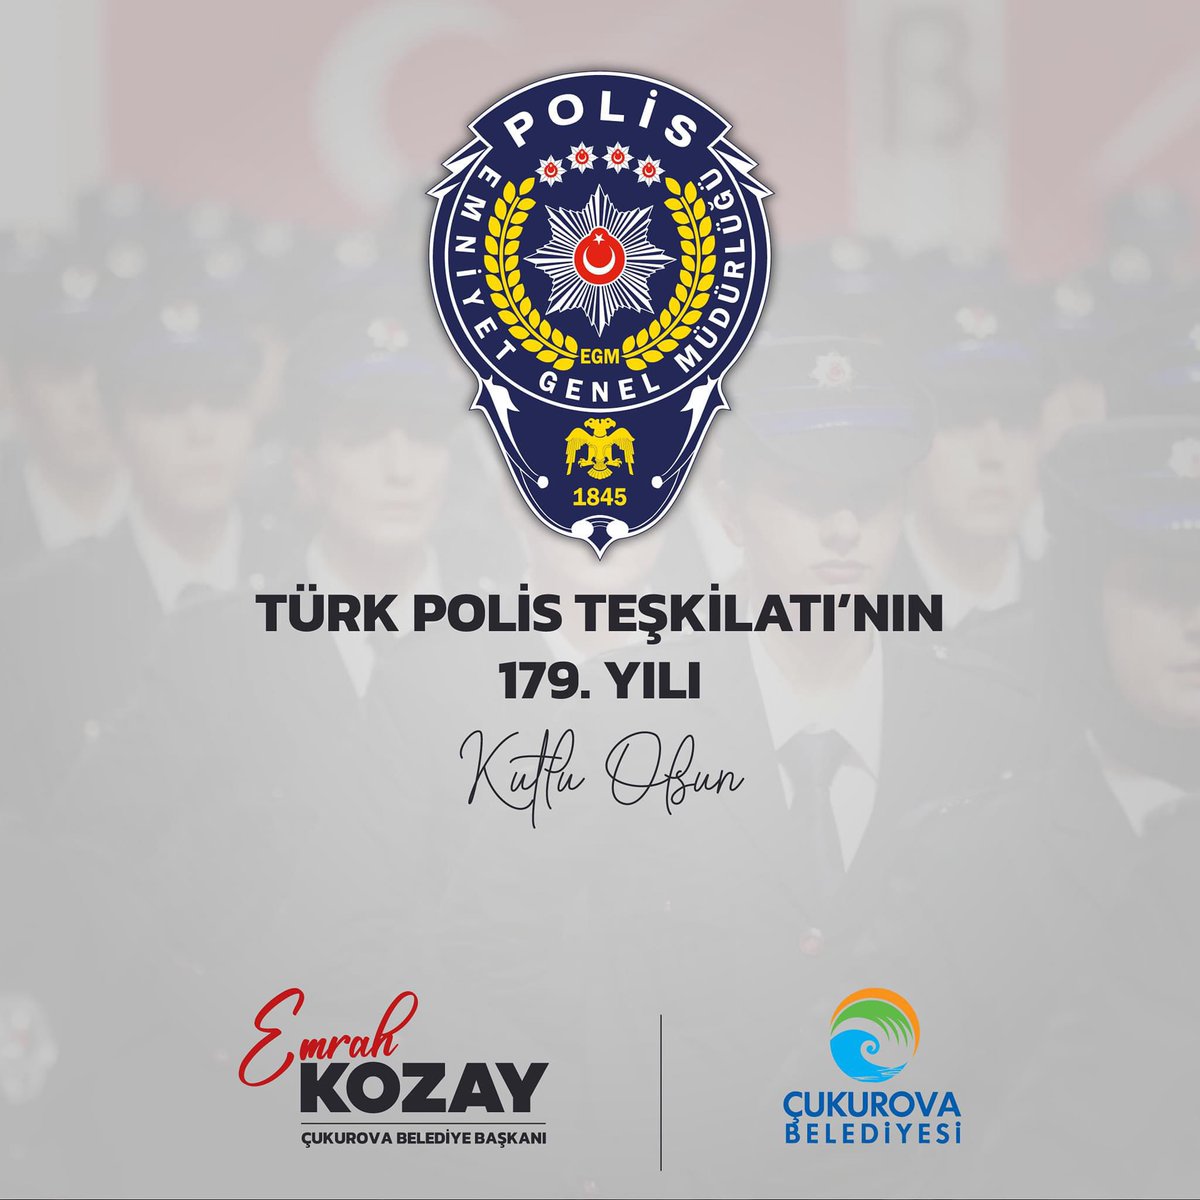 Halkımızın huzuru ve güvenliği için görev yapan Türk Polis Teşkilatı'mızın 179. kuruluş yıl dönümünü kutluyoruz. Şehit düşen kahraman polislerimizi rahmetle anıyor, gazi polislerimize şükranlarımızı sunuyoruz.